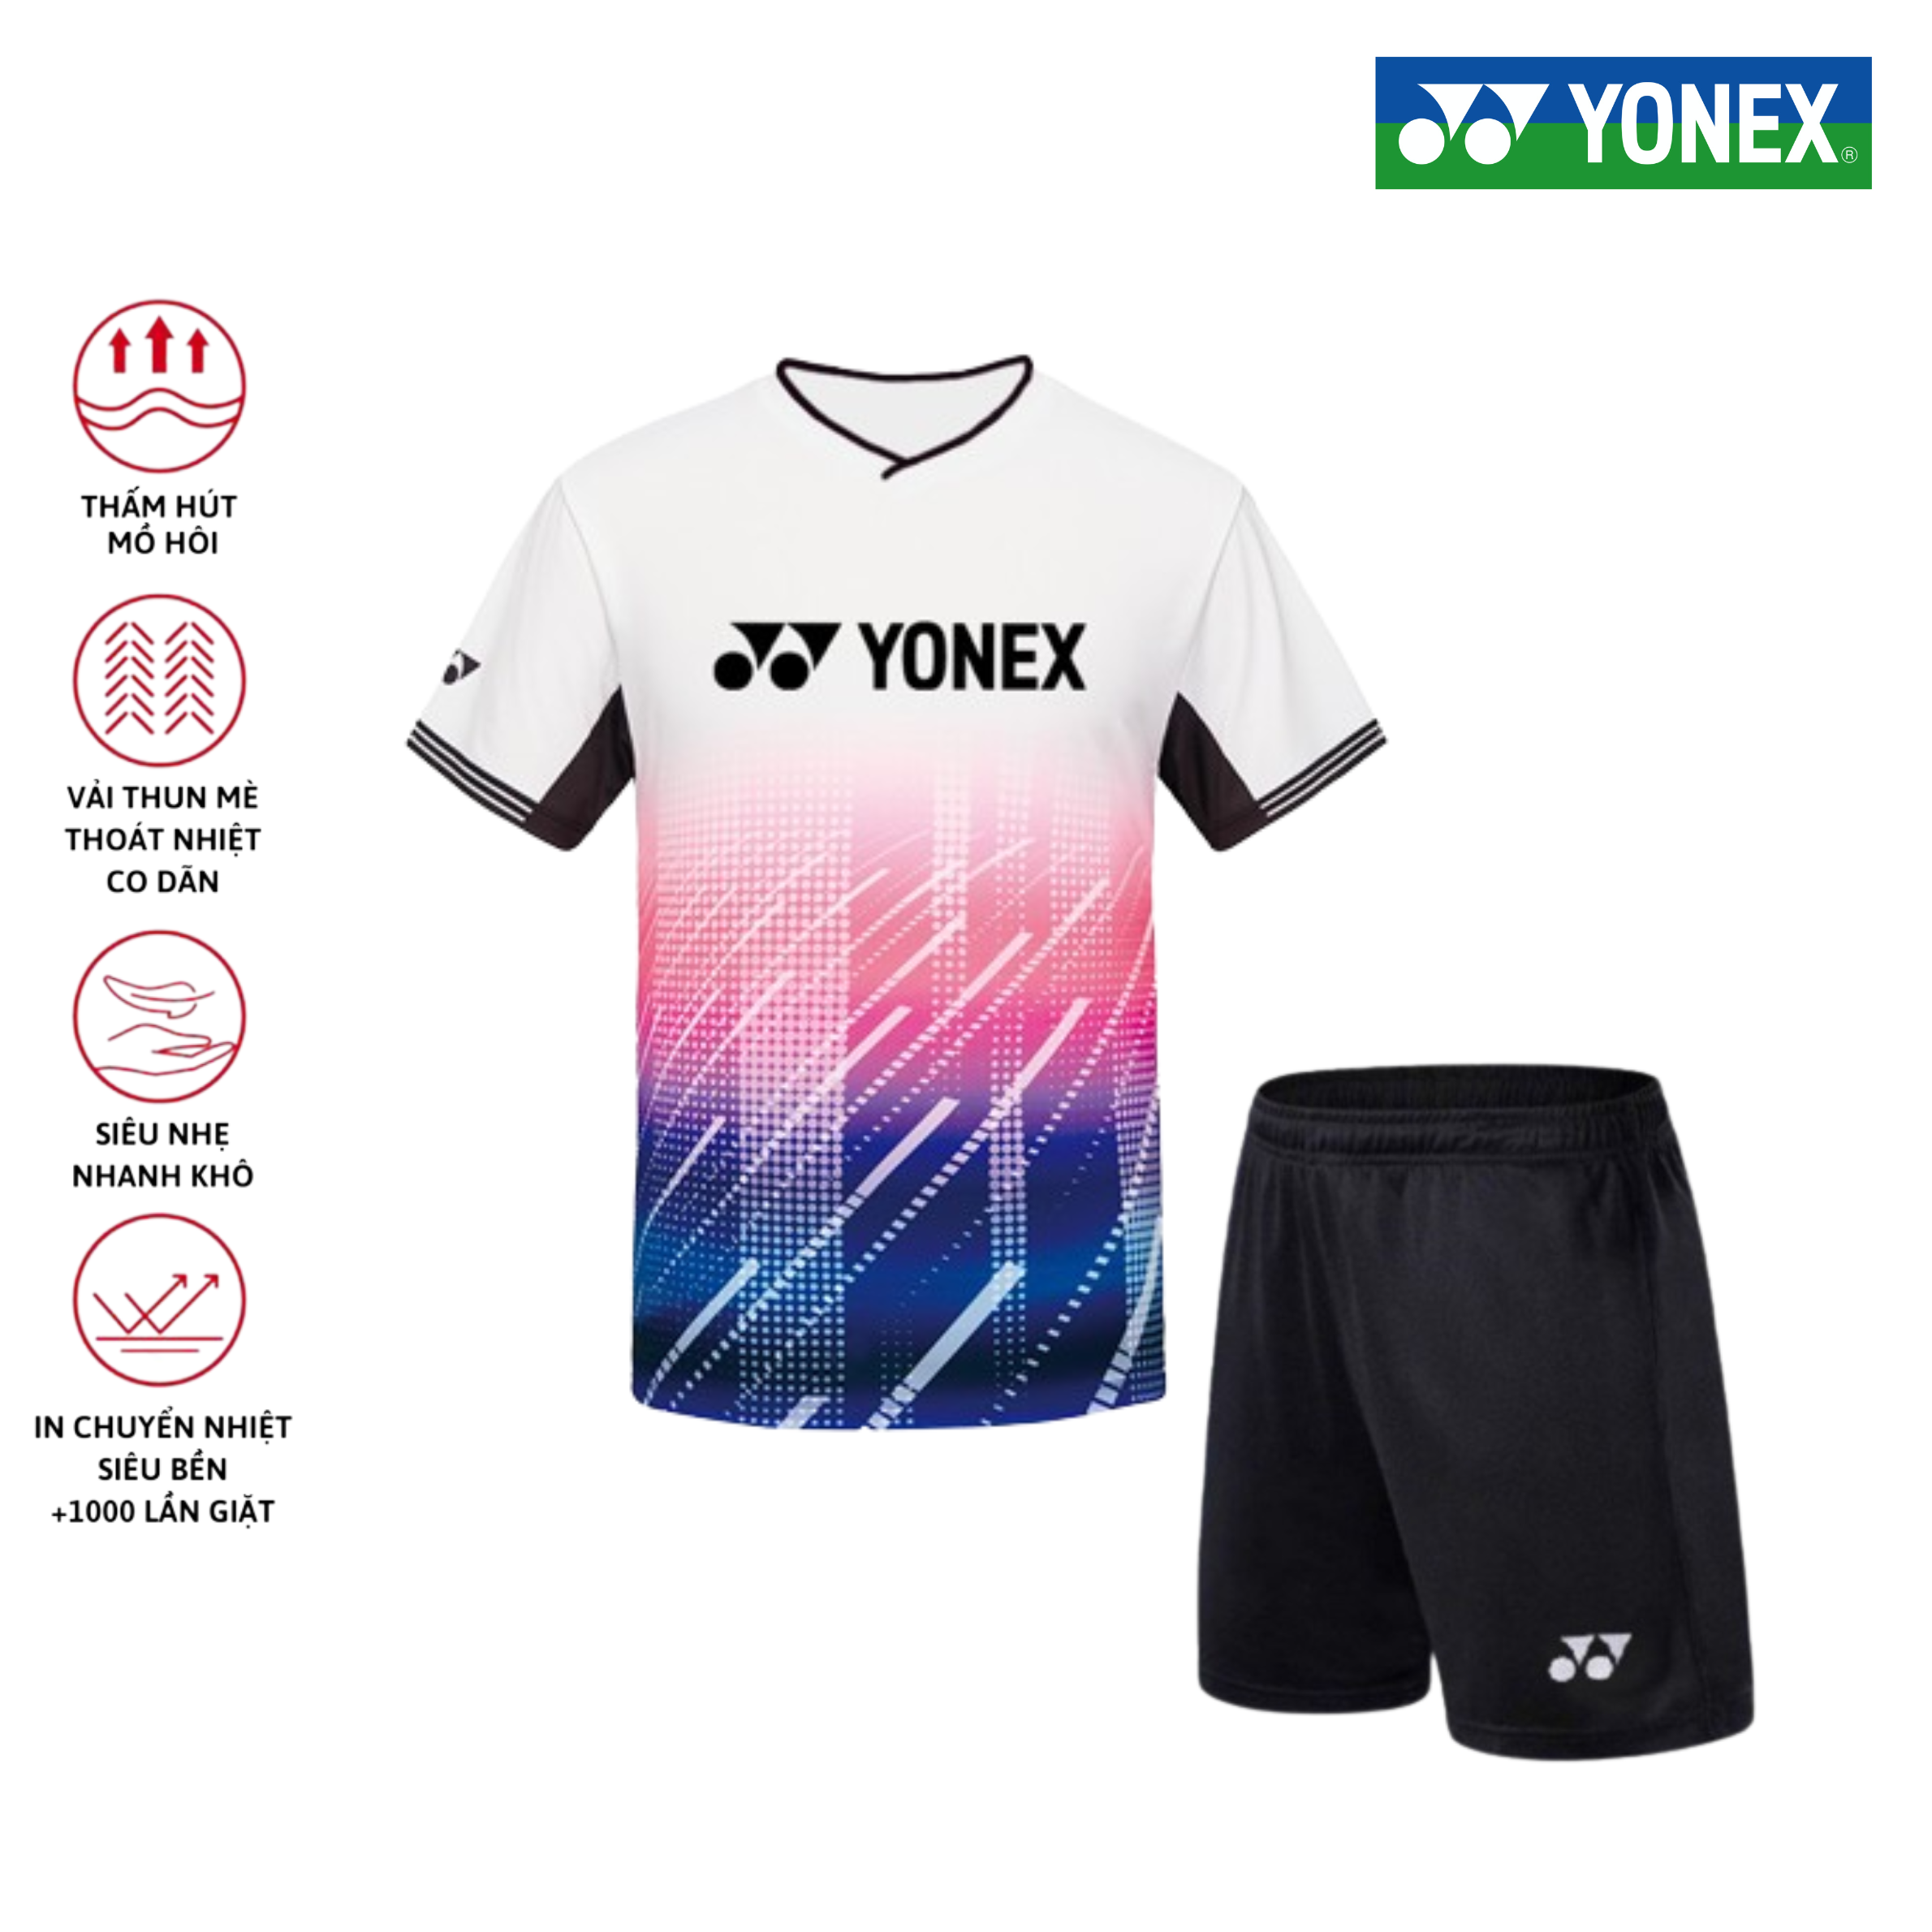 Áo cầu lông, quần cầu lông Yonex chuyên nghiệp mới nhất sử dụng tập luyện và thi đấu cầu lông A486